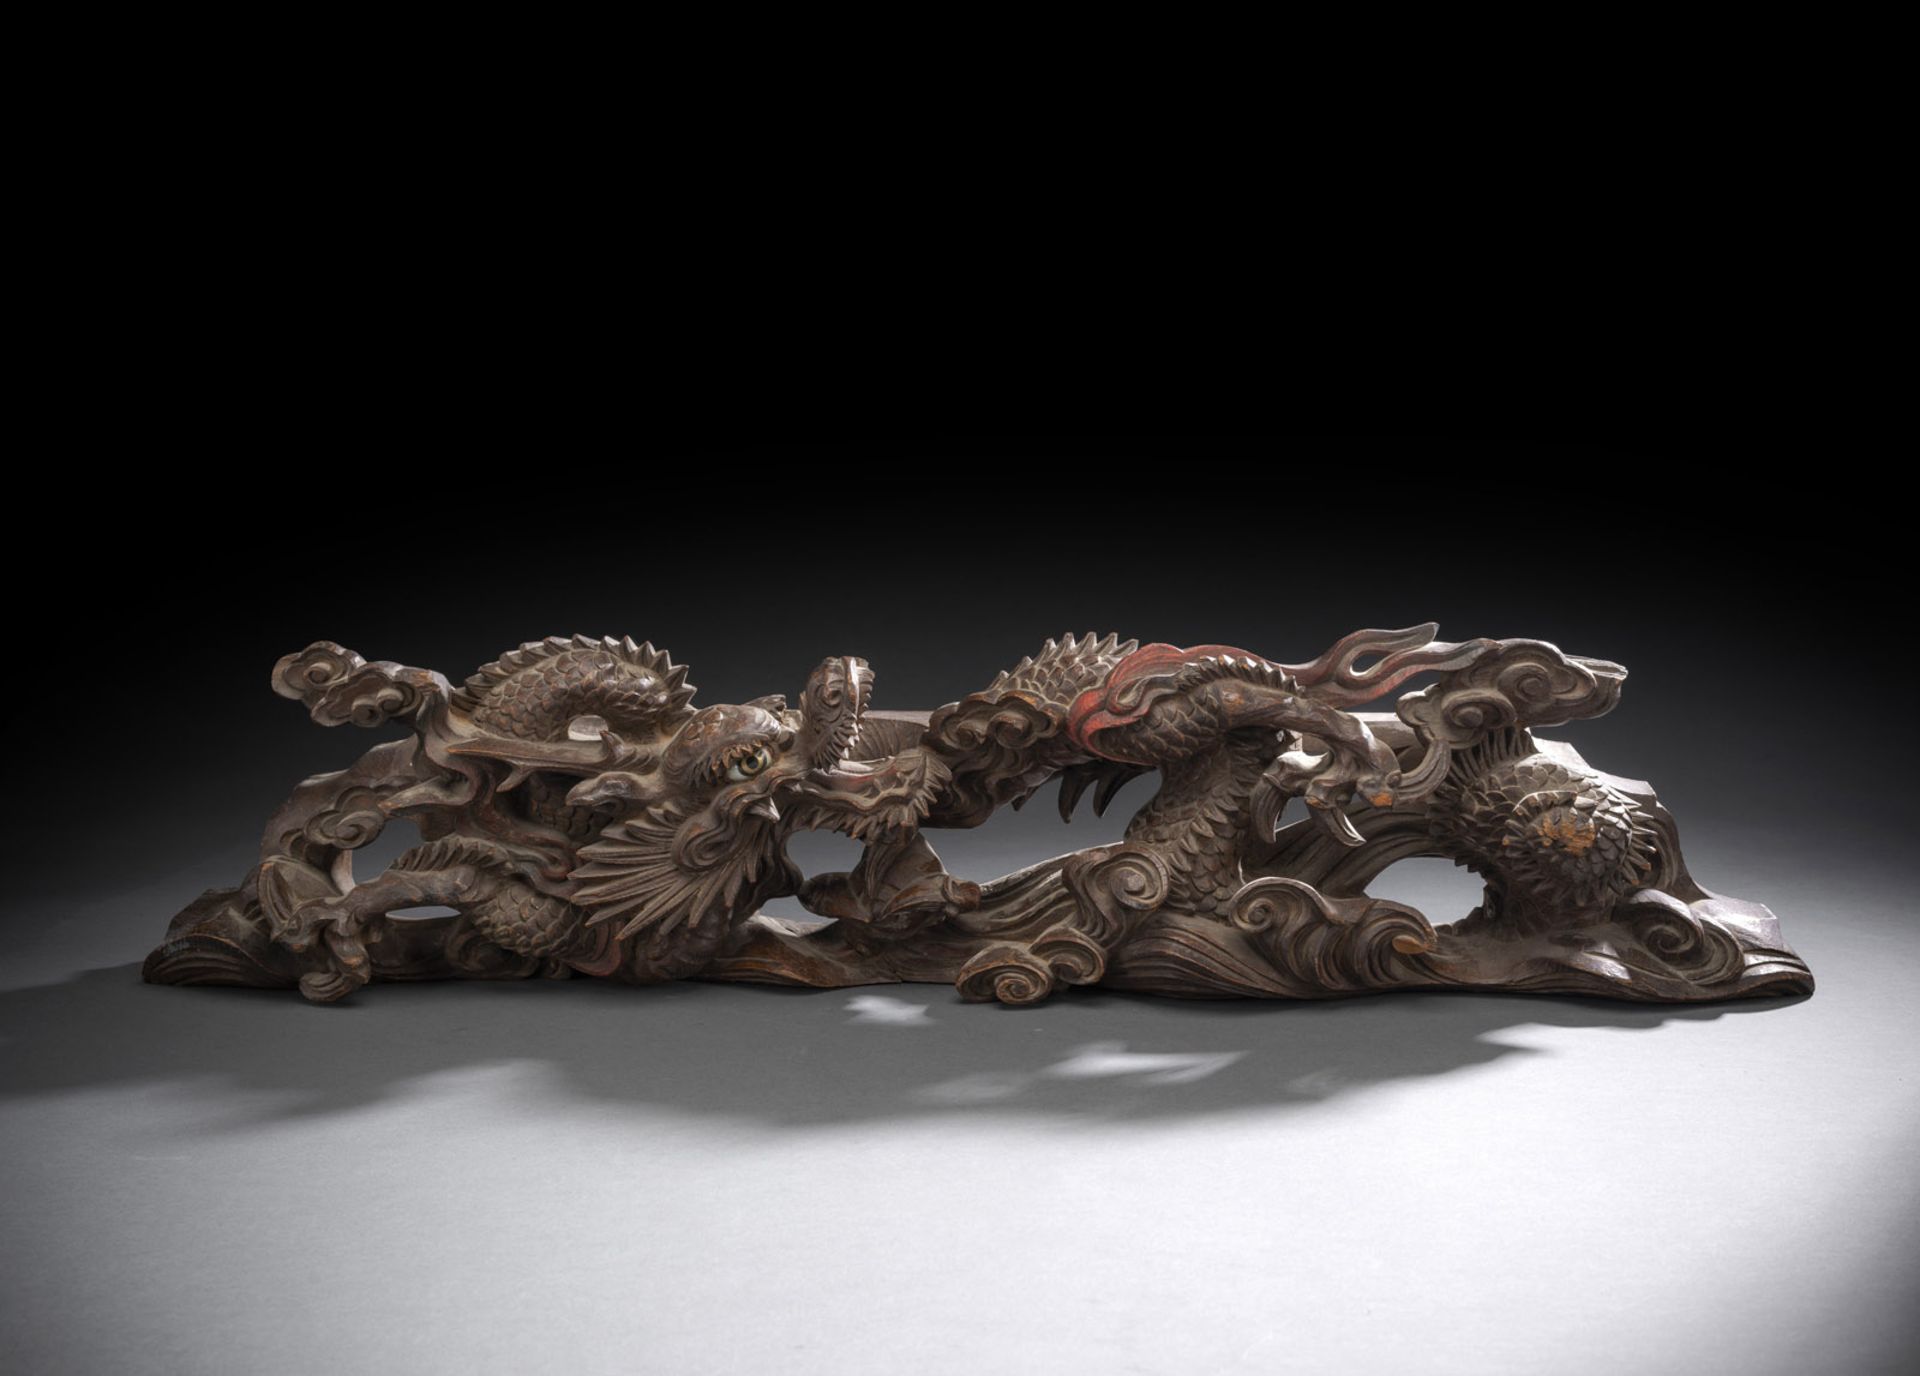 Zierleiste aus Holz mit geschnitztem Dekor eines sich windenden Drachens zwischen Gischt teils mit 